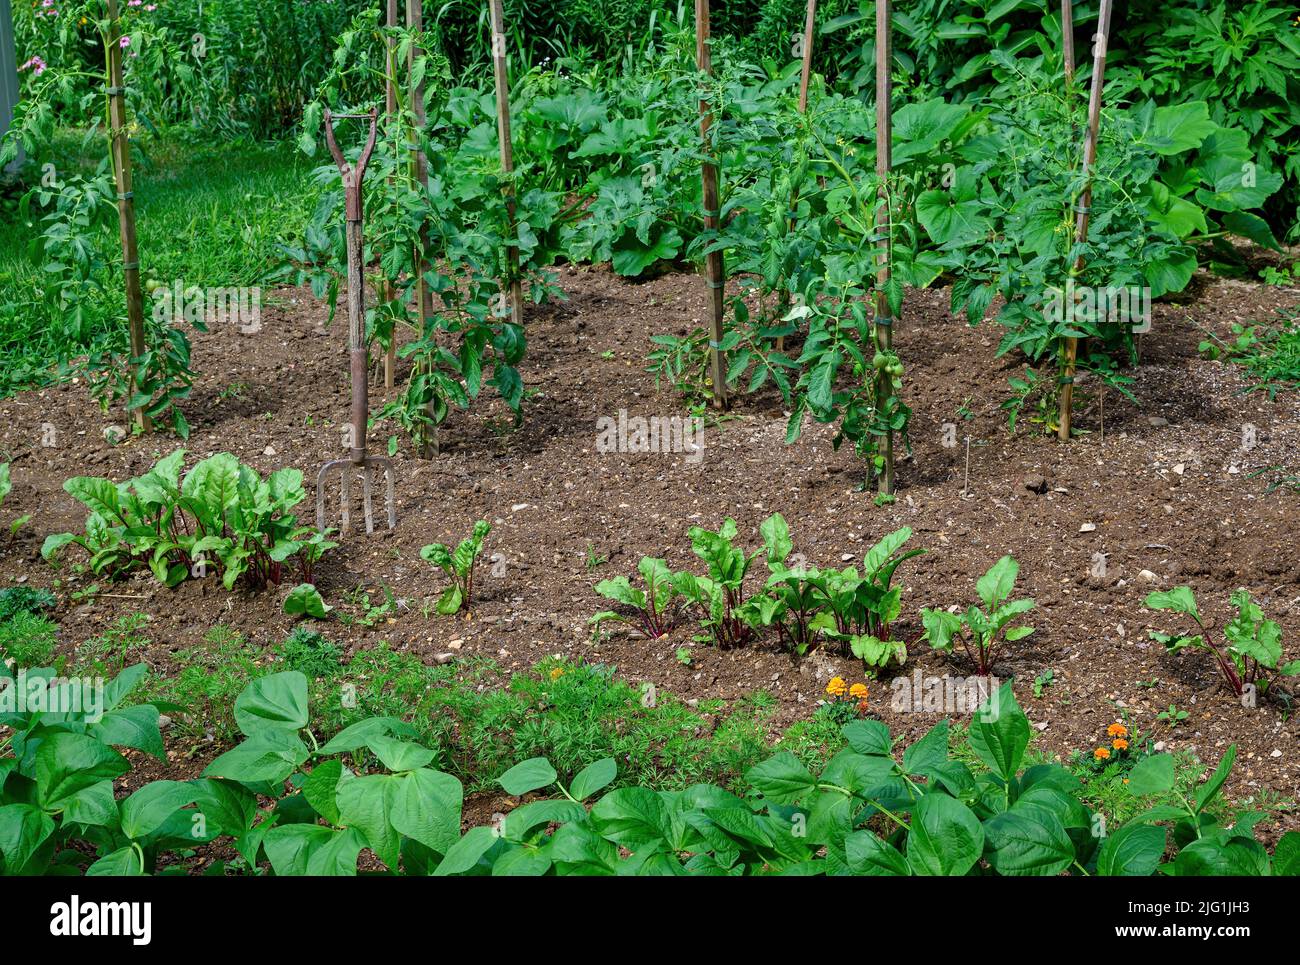 Home Gemüsegarten an einem sonnigen Tag. Zu den Kulturpflanzen gehören Karotte, Ringelblume als Begleitpflanze zur Abschreckung von Insekten, rote Rüben, Tomaten und Bohnen Stockfoto